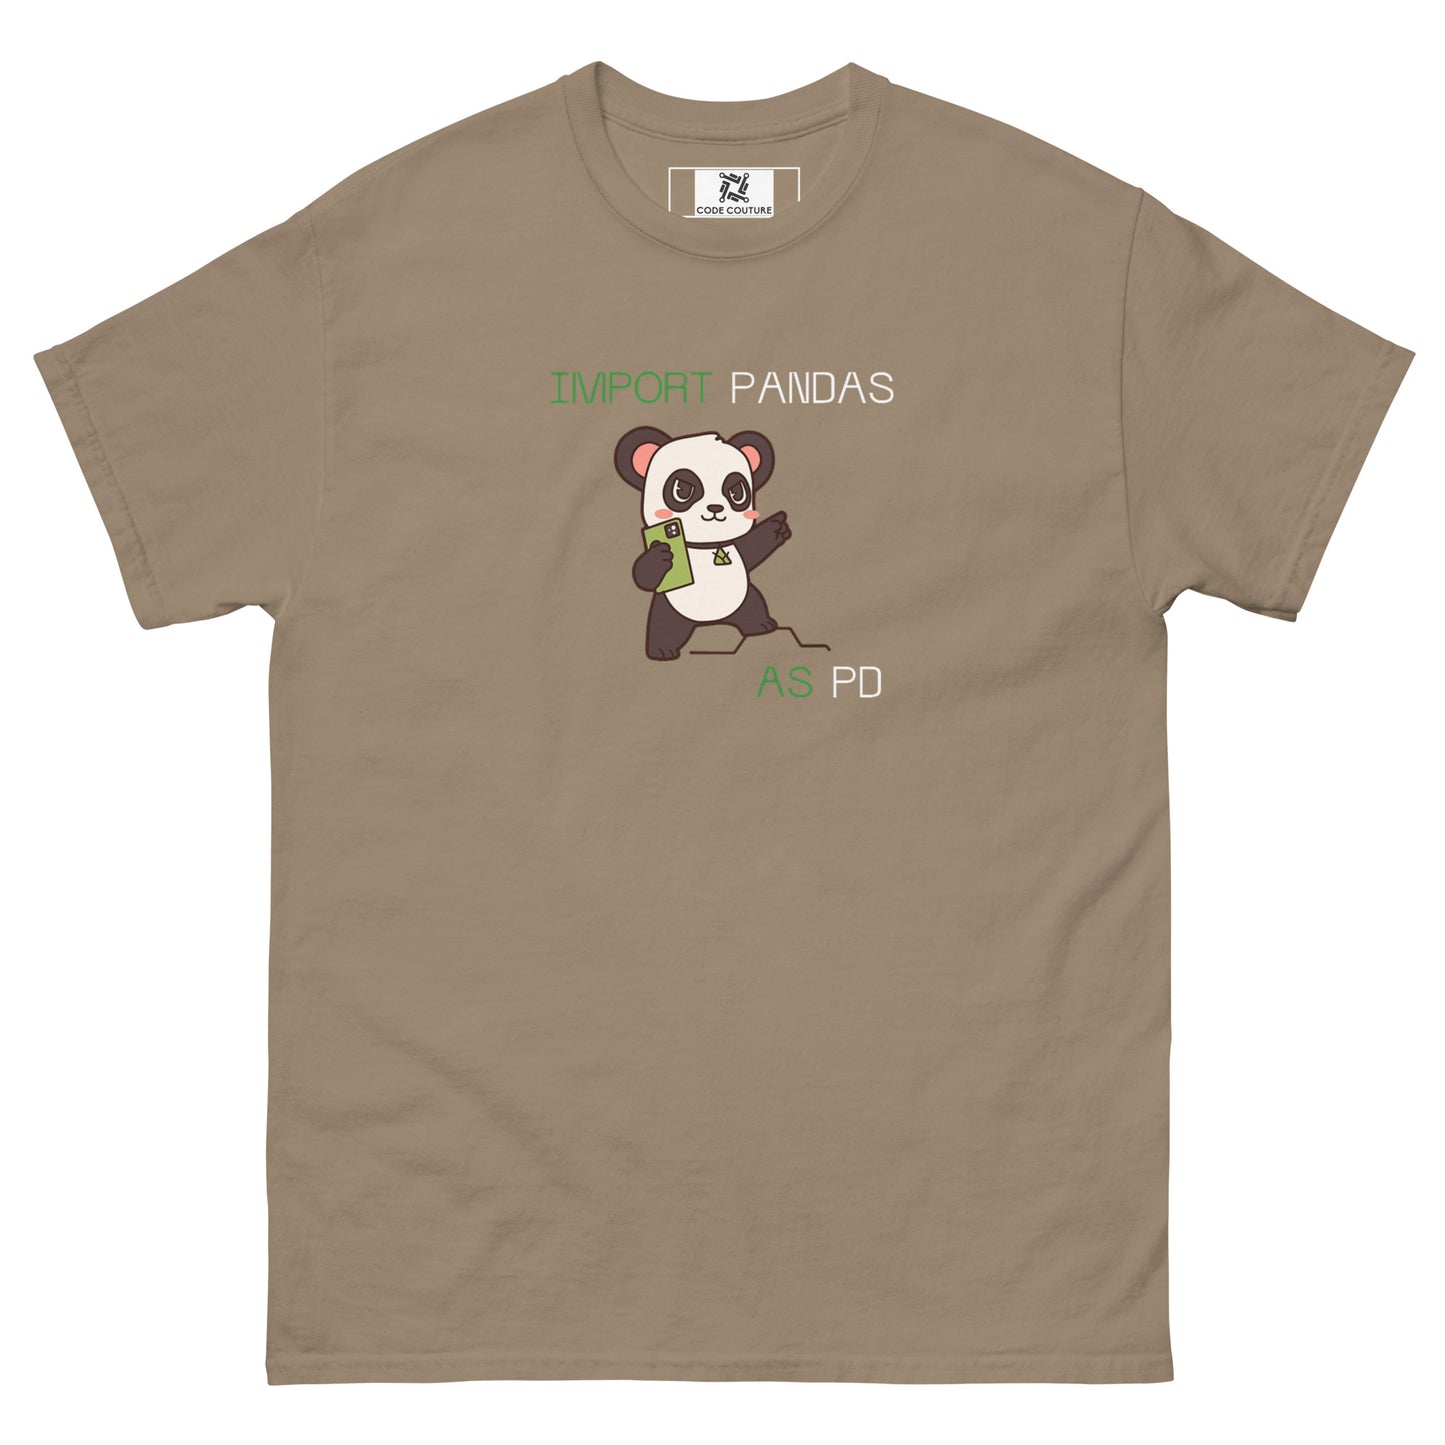 Pandas as PD